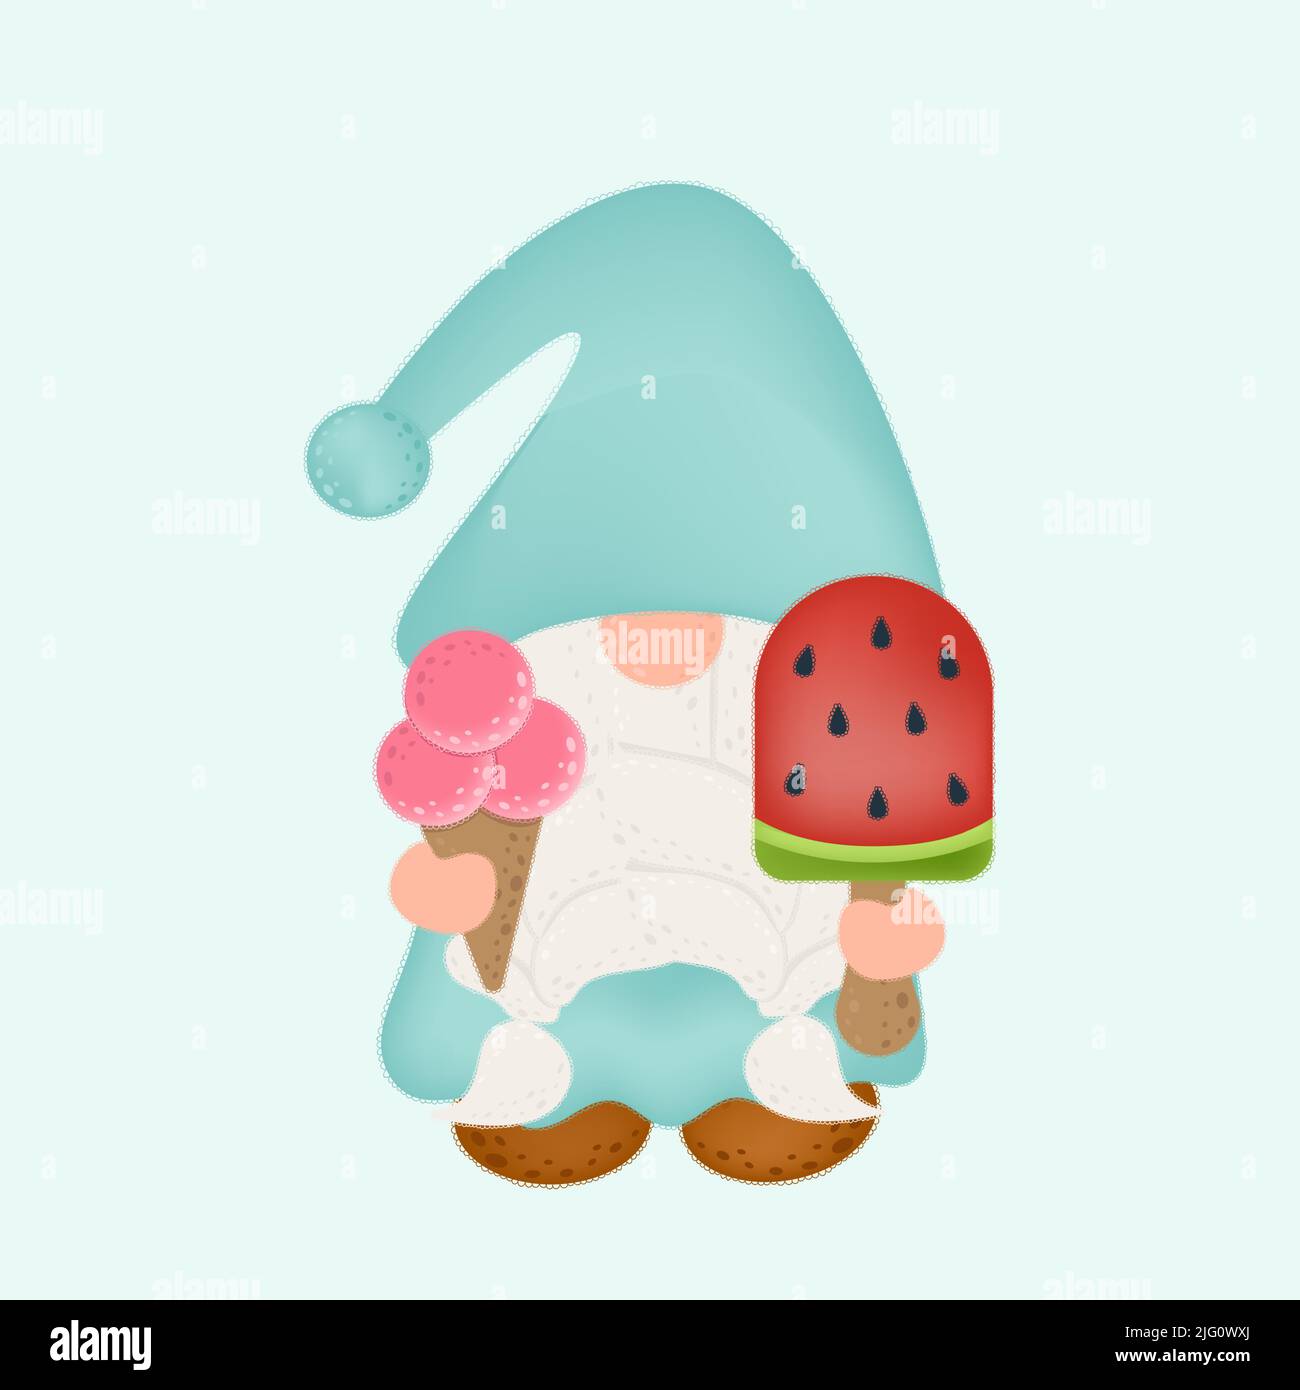 Conception de caractères GNOME Clipart. Adorable Gnome clip Art avec deux crèmes glacées. Illustration vectorielle d'un personnage pour des imprimés pour vêtements, autocollants, bébés Illustration de Vecteur